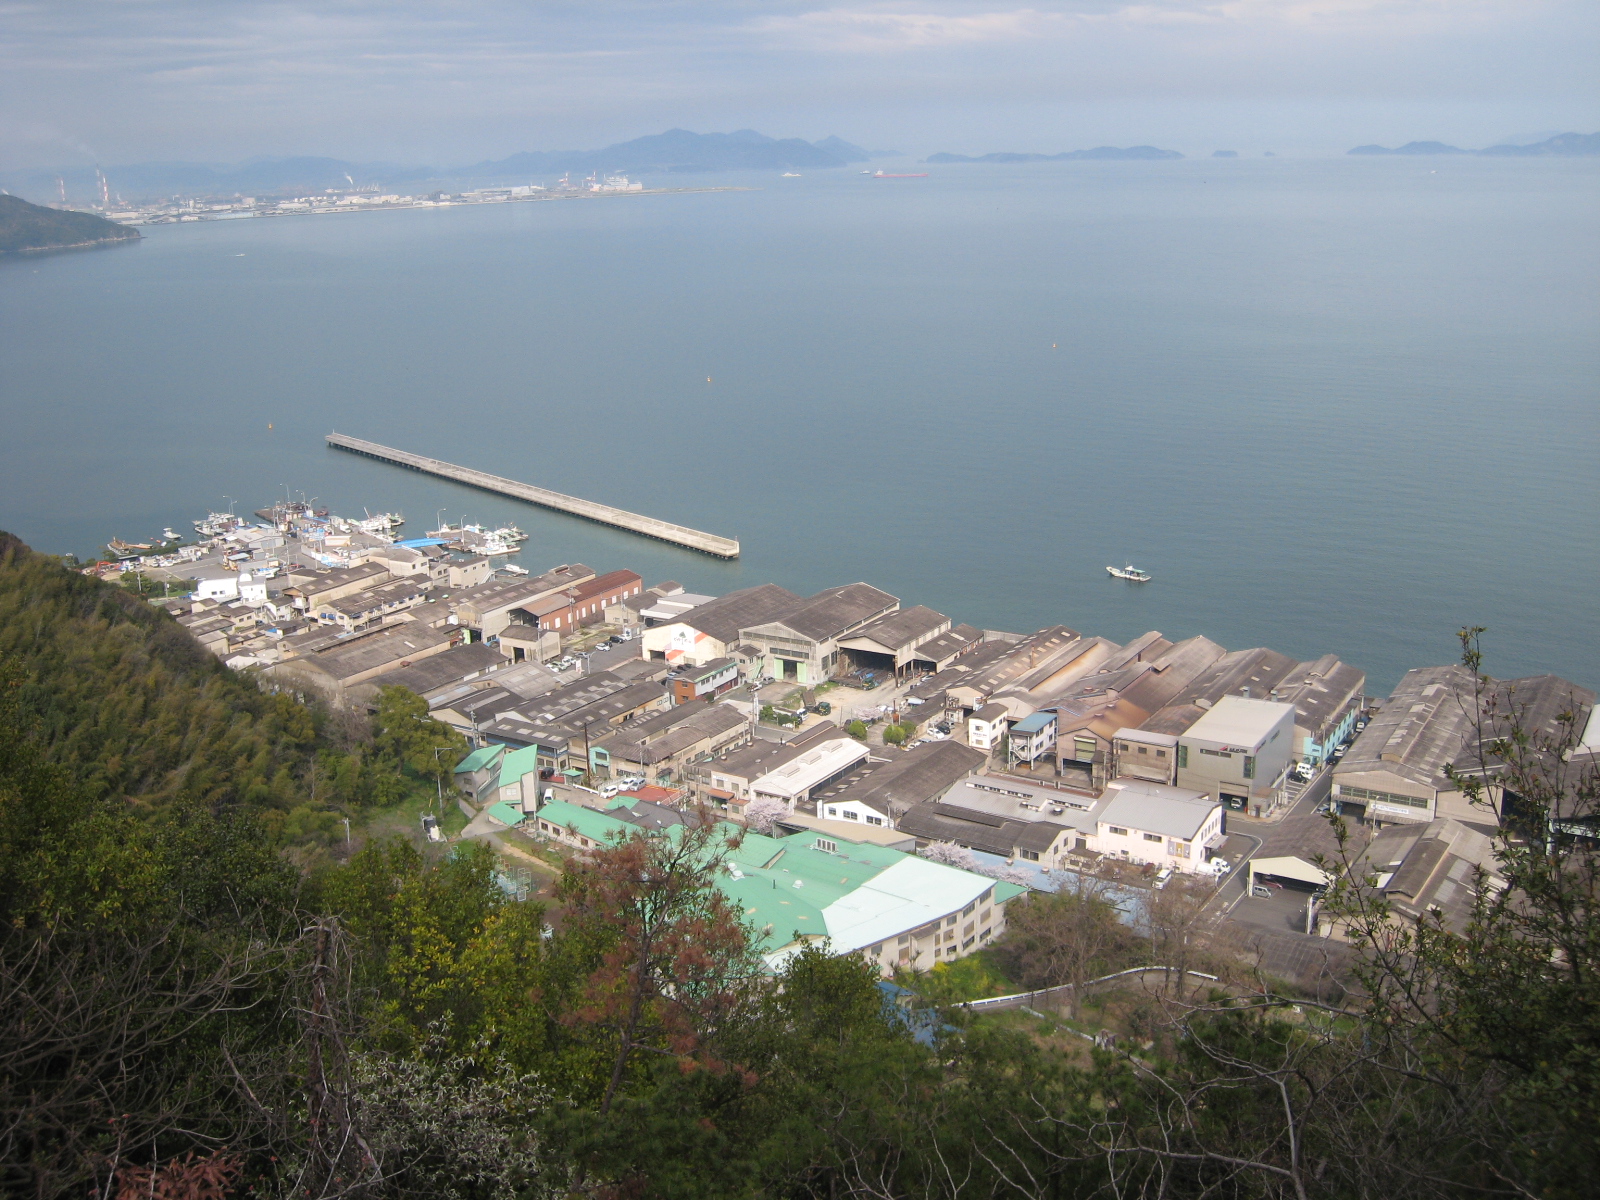 日本で一番最初に造成された工業団地「鞆鉄鋼団地」～造成された経緯と歴史